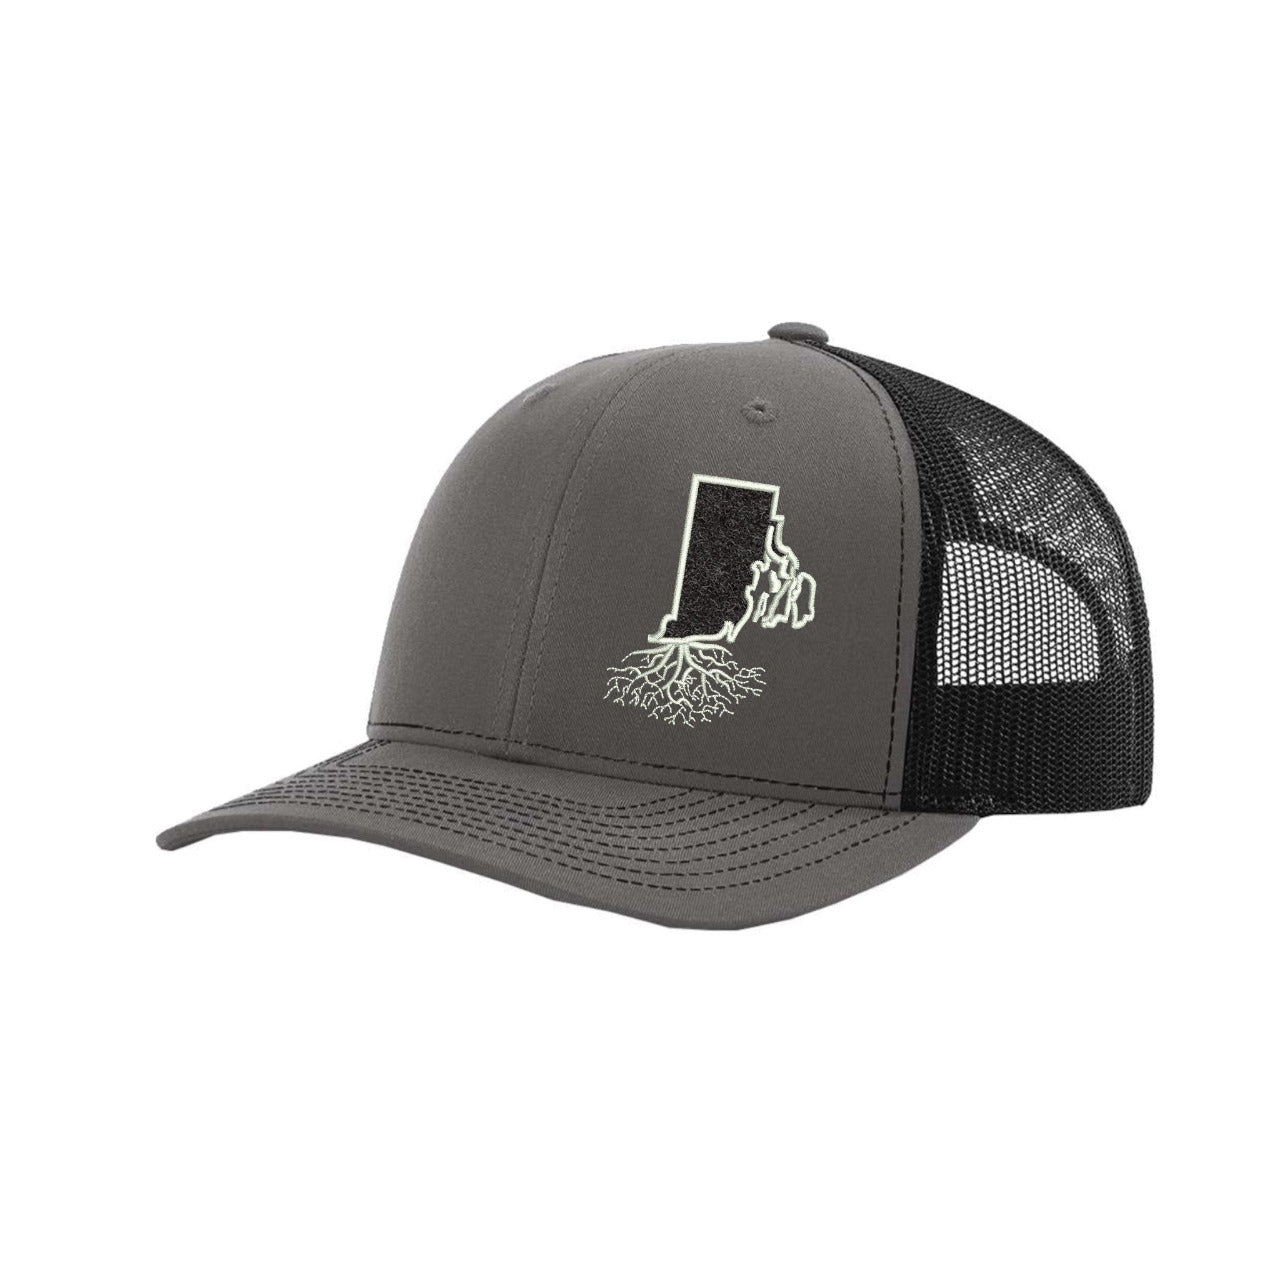 Rhode Island Hook & Loop Trucker Cap - Hats